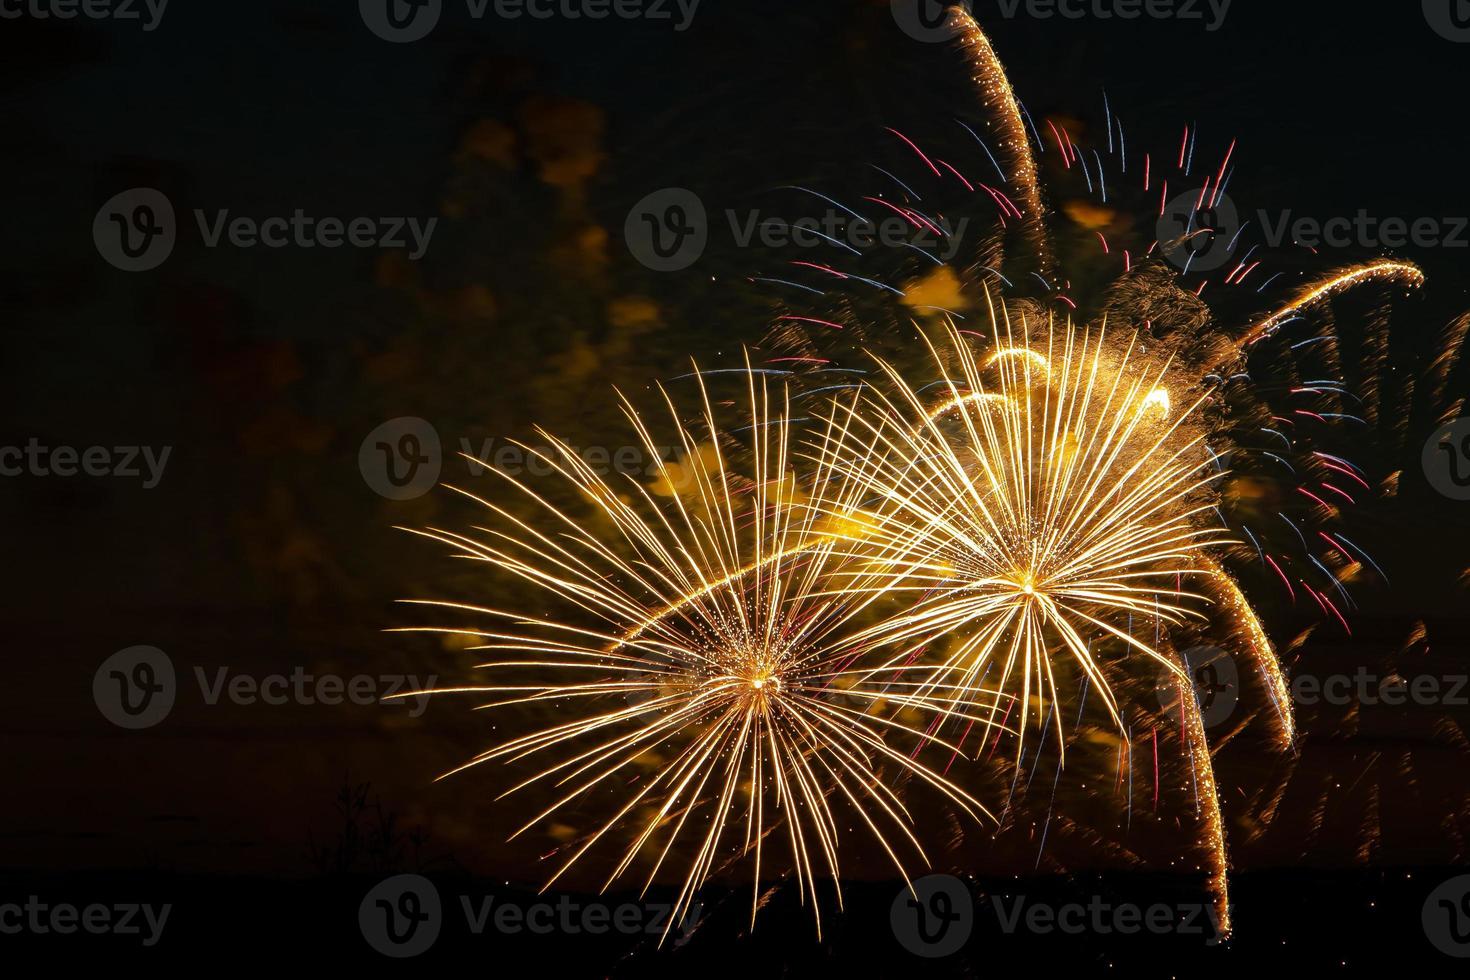 feux d'artifice aux couleurs vives lors d'une nuit festive explosions de feu coloré dans le ciel photo